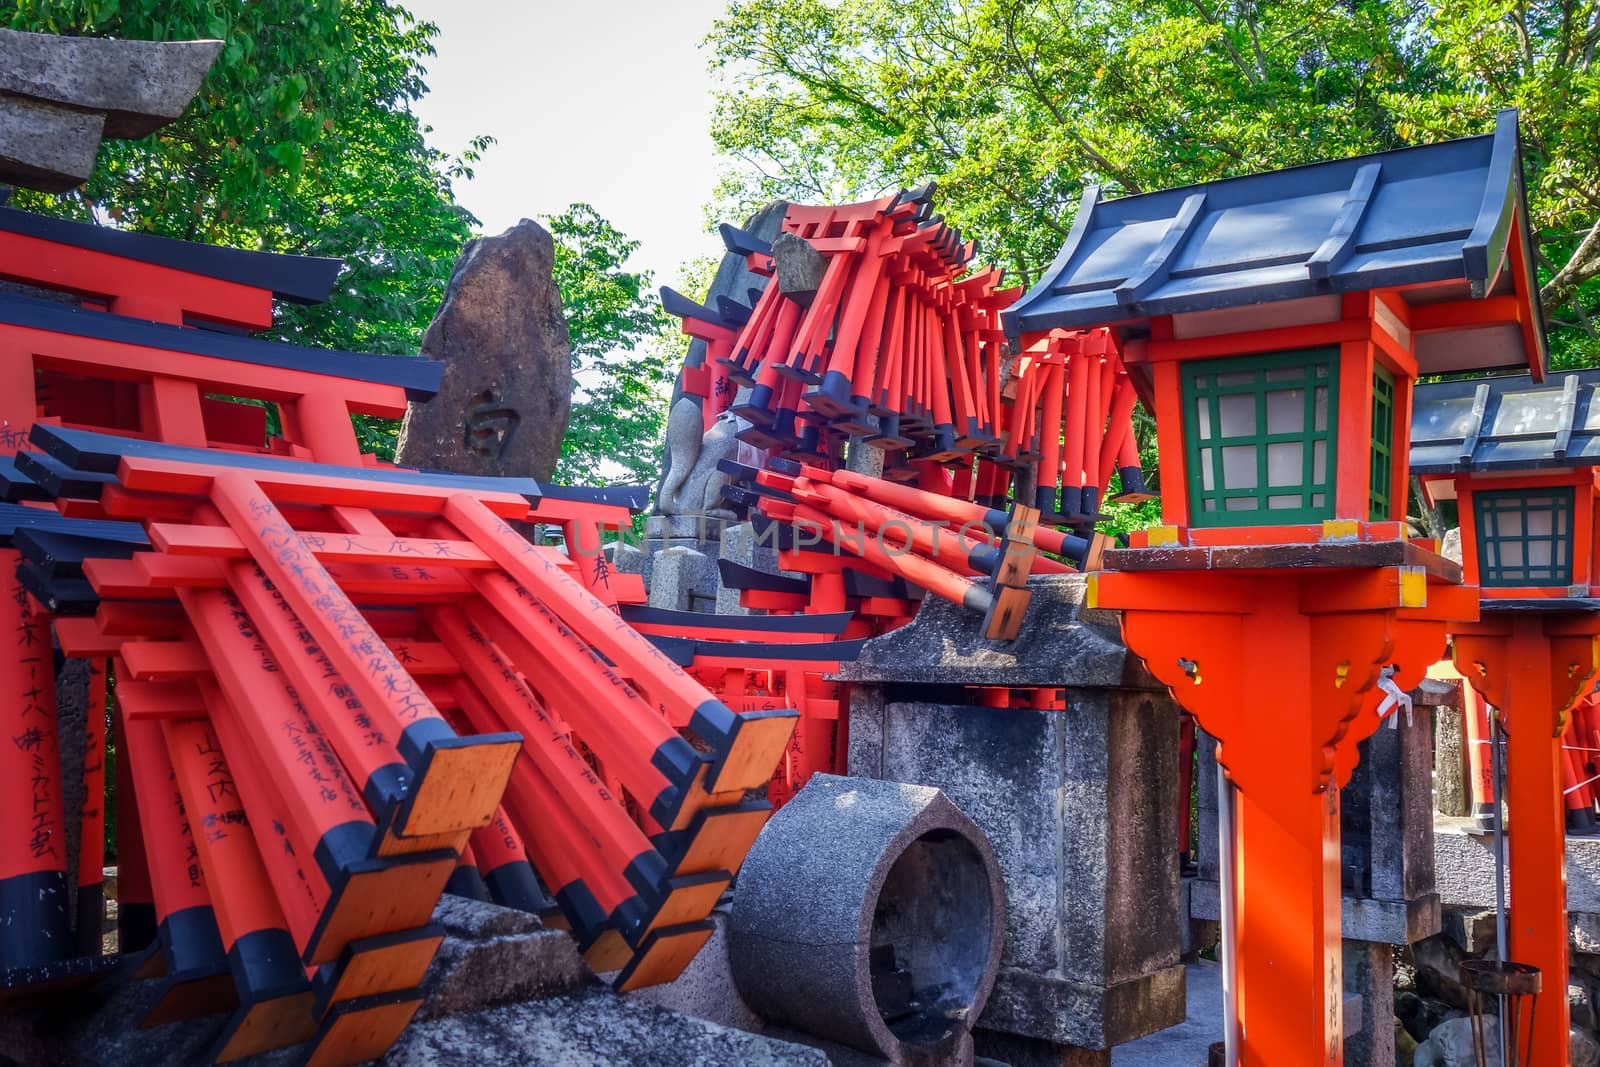 Gifts at Fushimi Inari Taisha, Kyoto, Japan by daboost